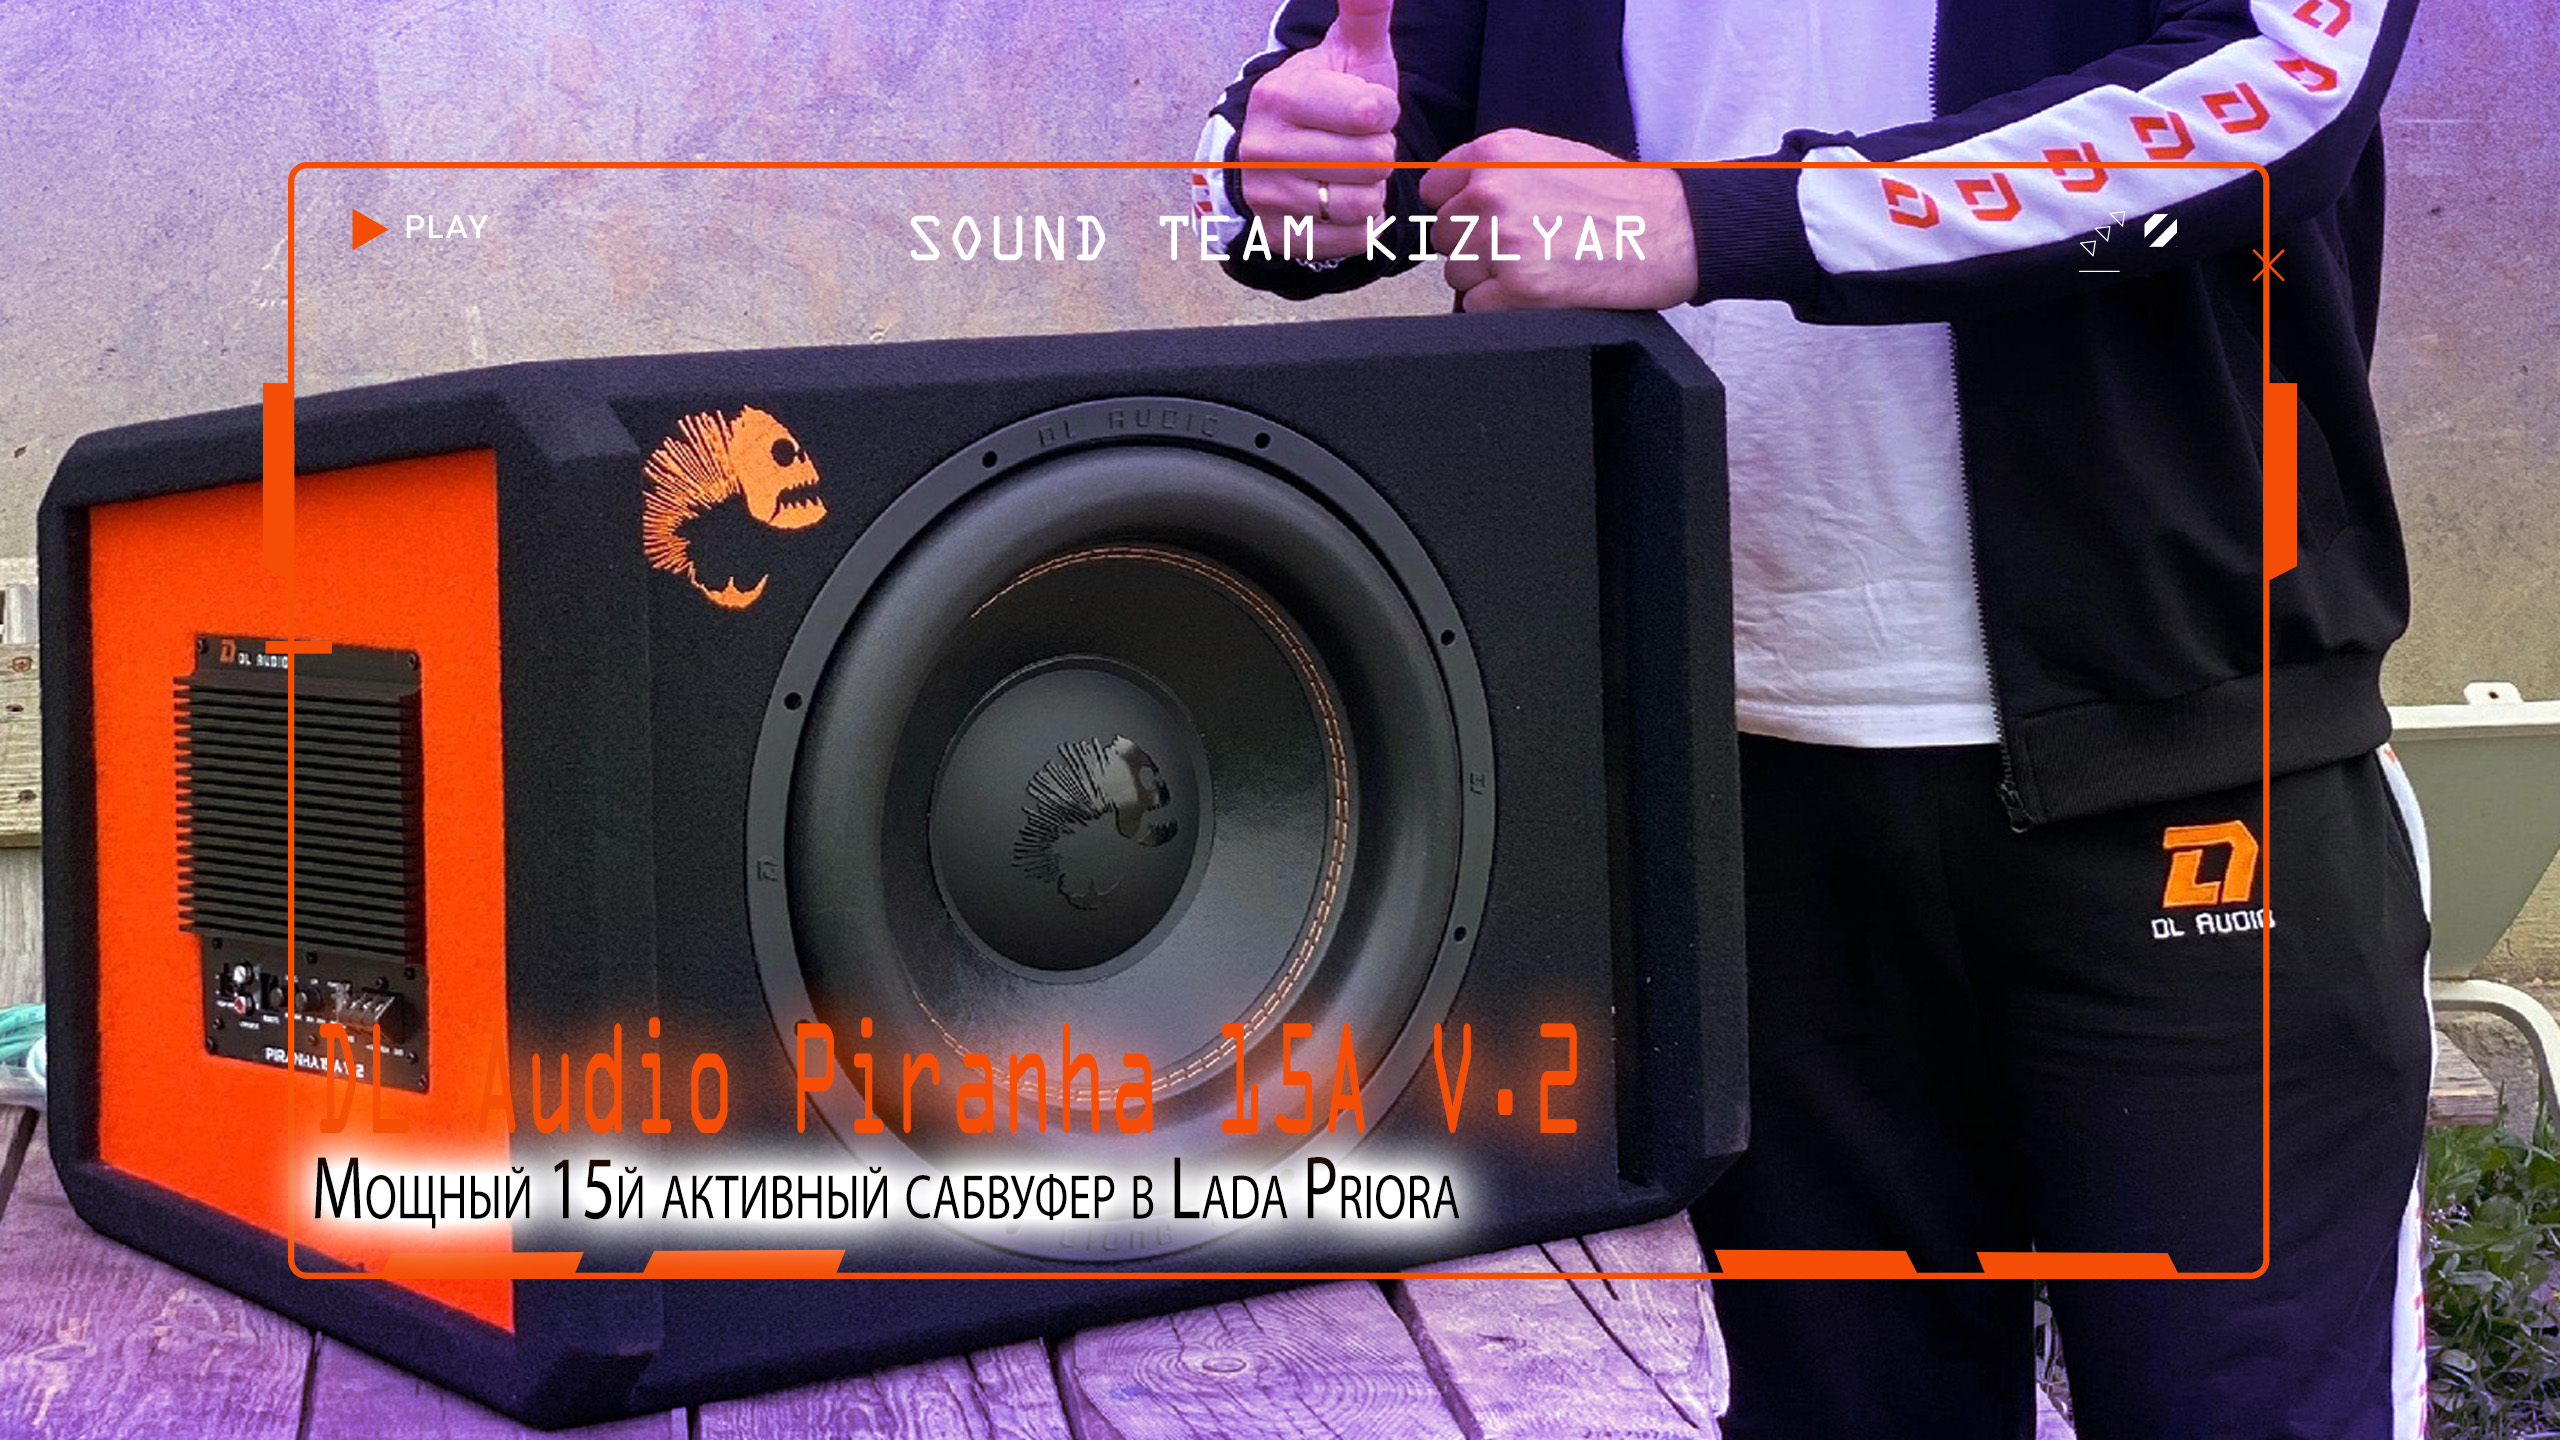 Мощный 15й активный сабвуфер в Lada Priora! DL Audio Piranha 15A V.2